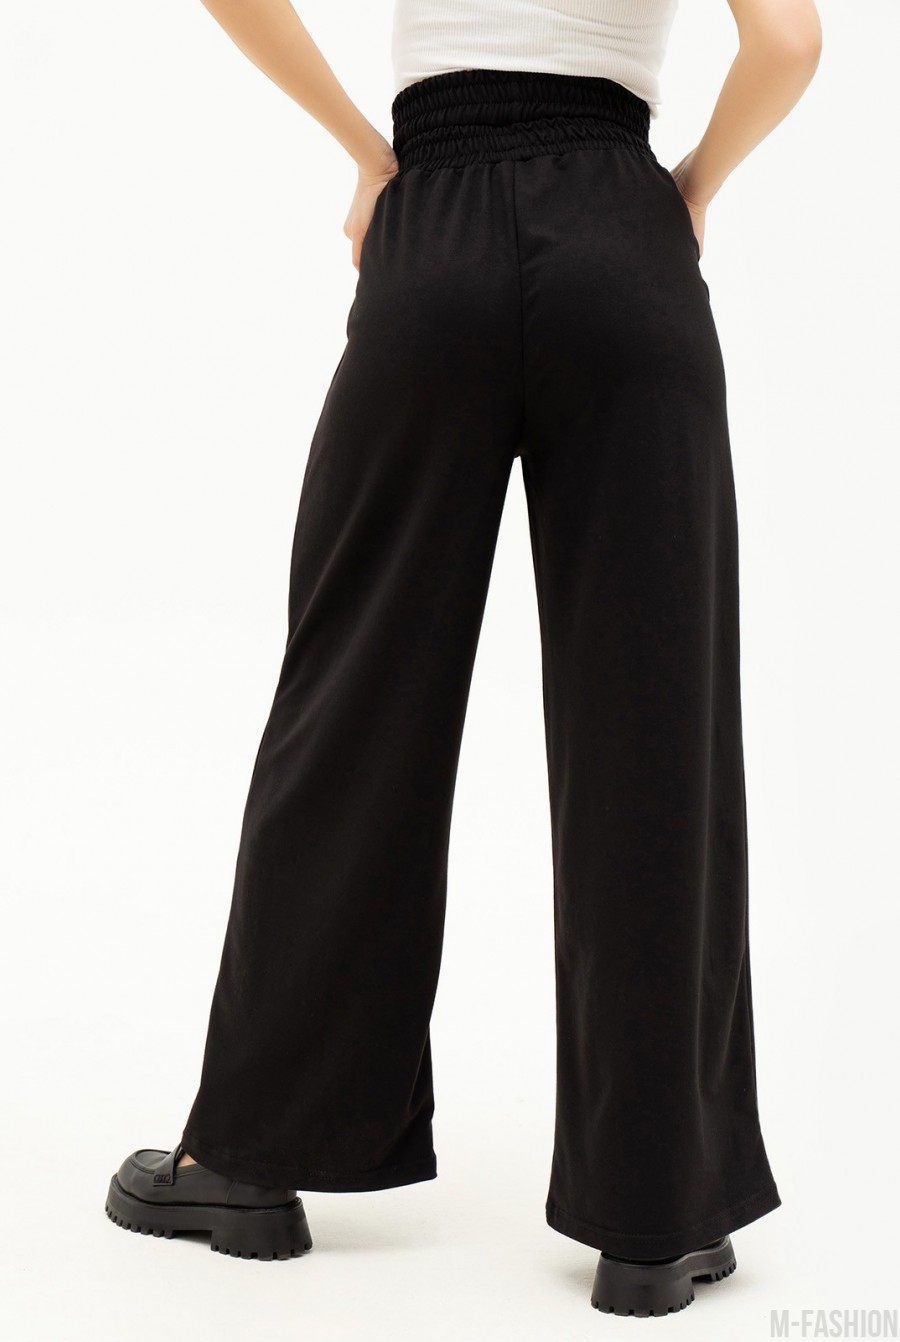 Черные свободные брюки с двойной резинкой - Фото 3